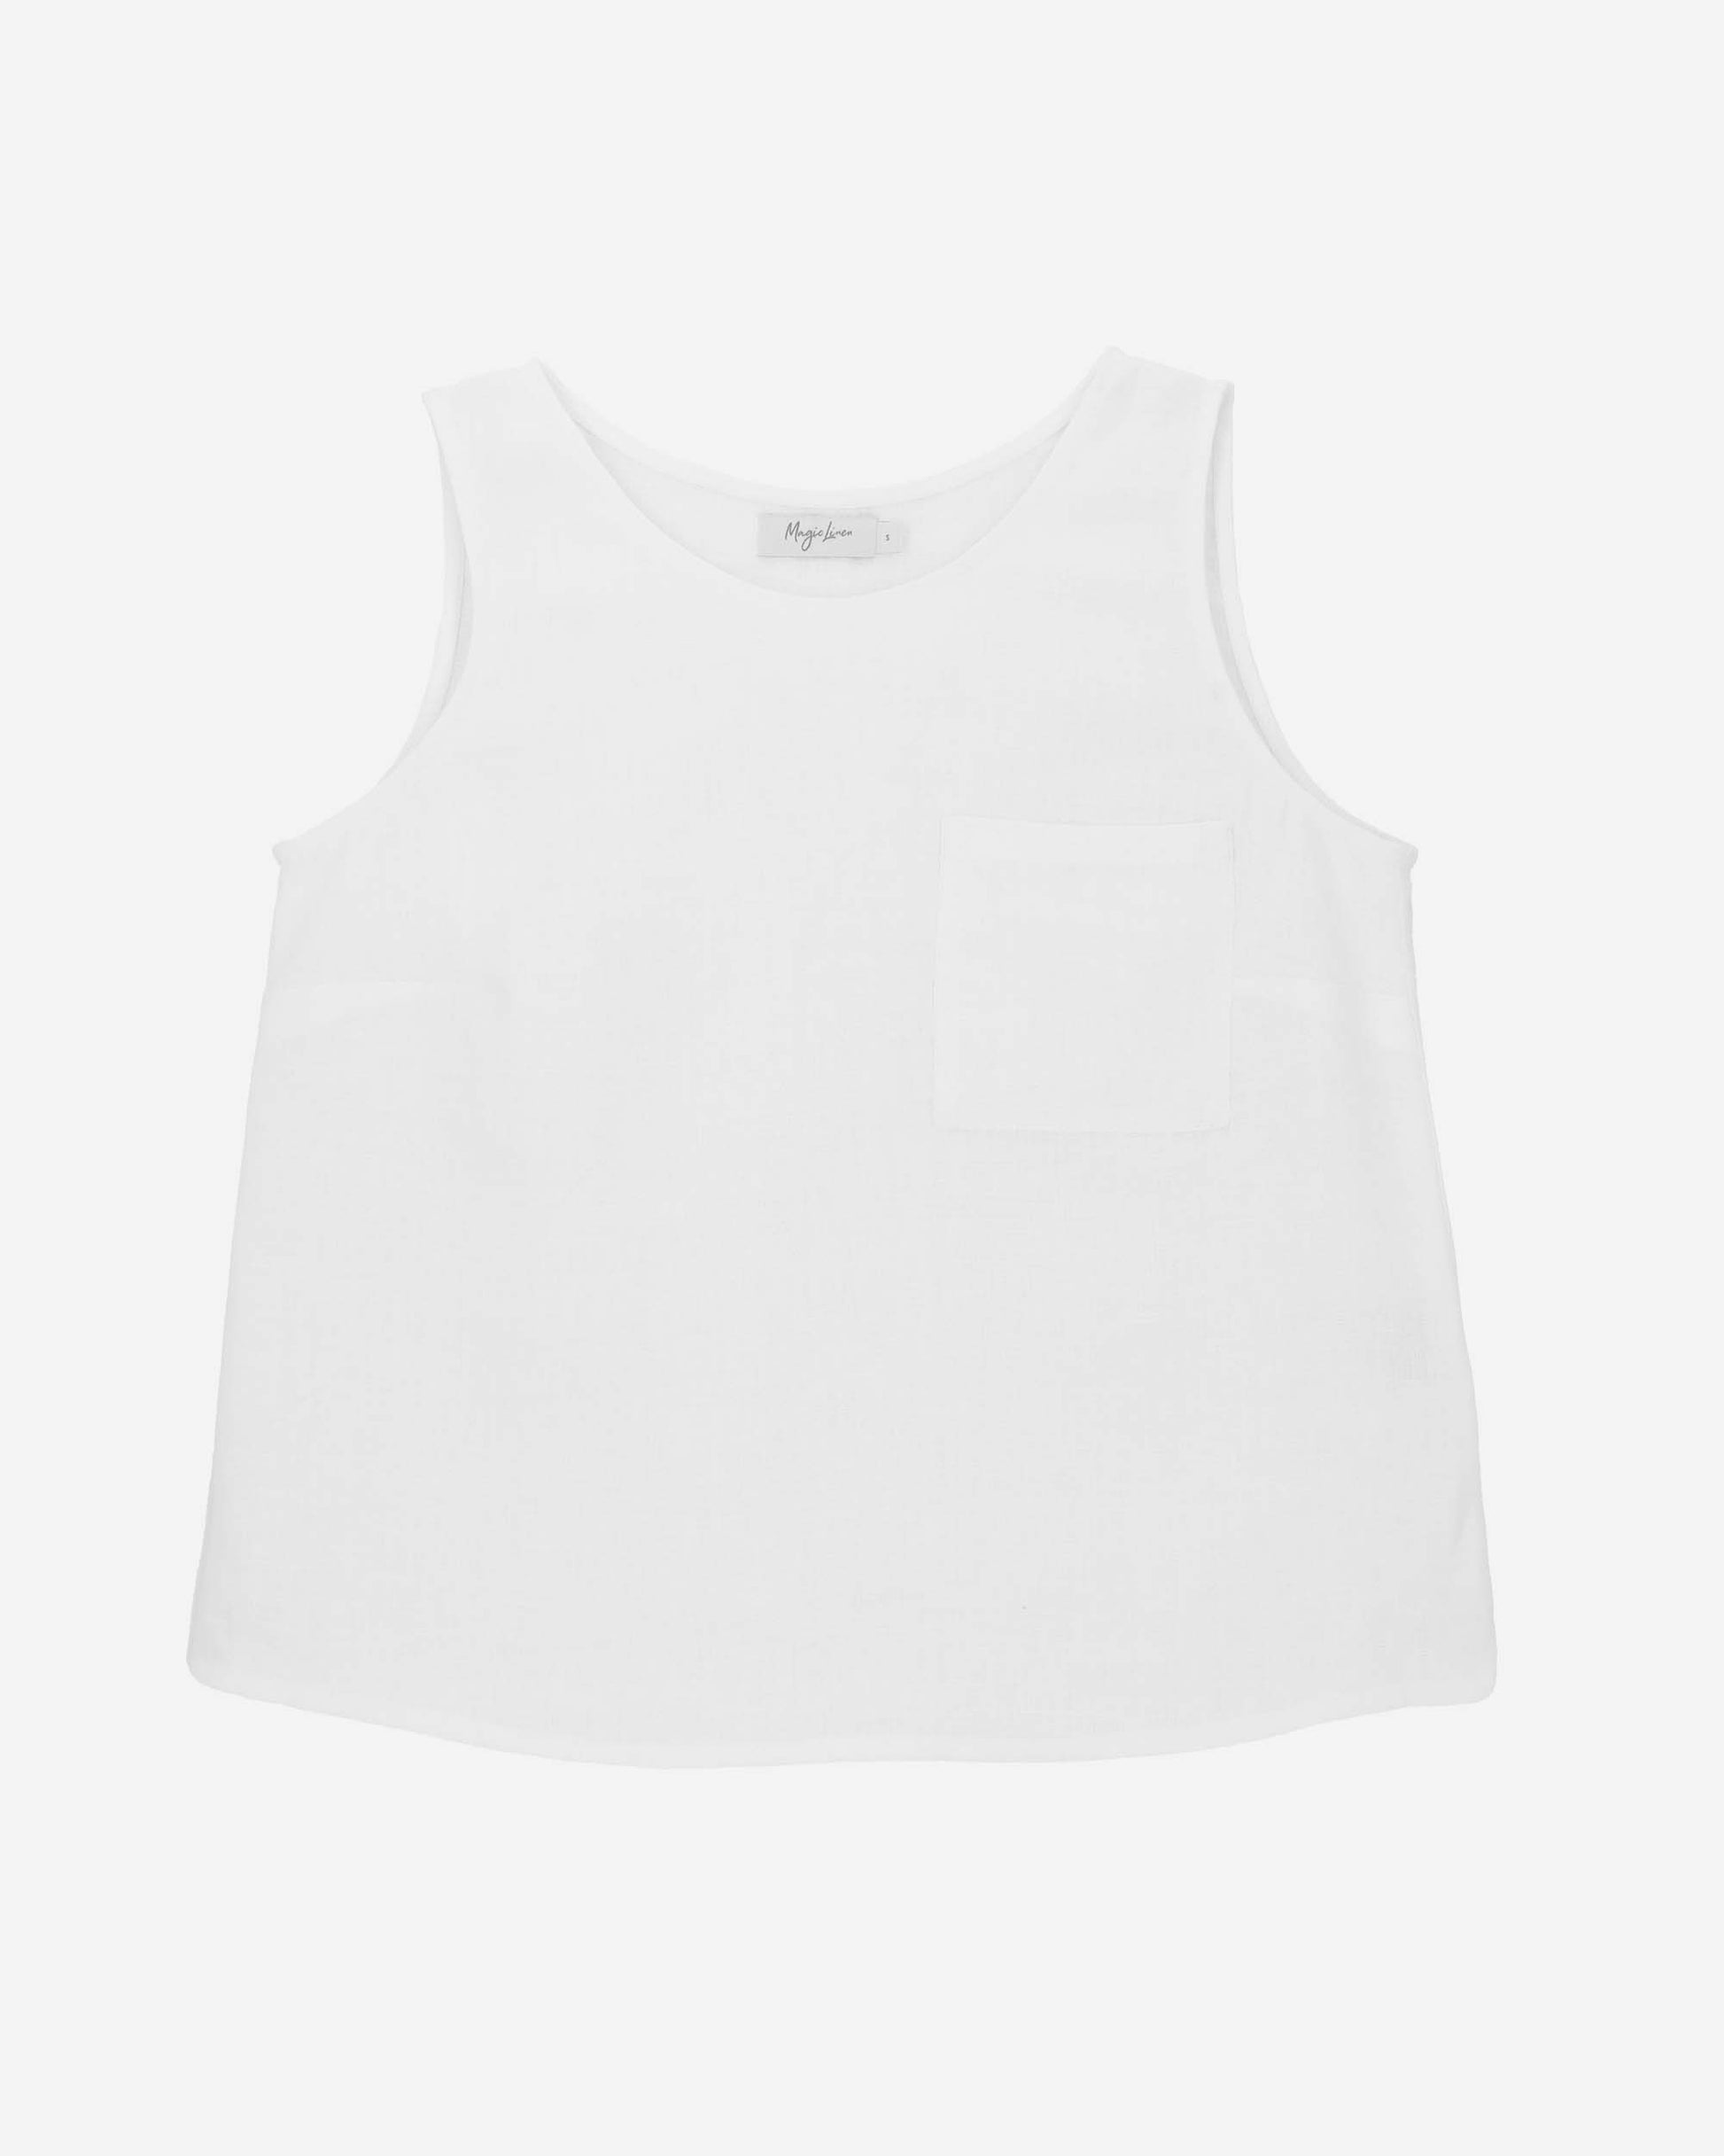 white linen top, sleeveless top women, loose tank top 1946 – XiaoLizi